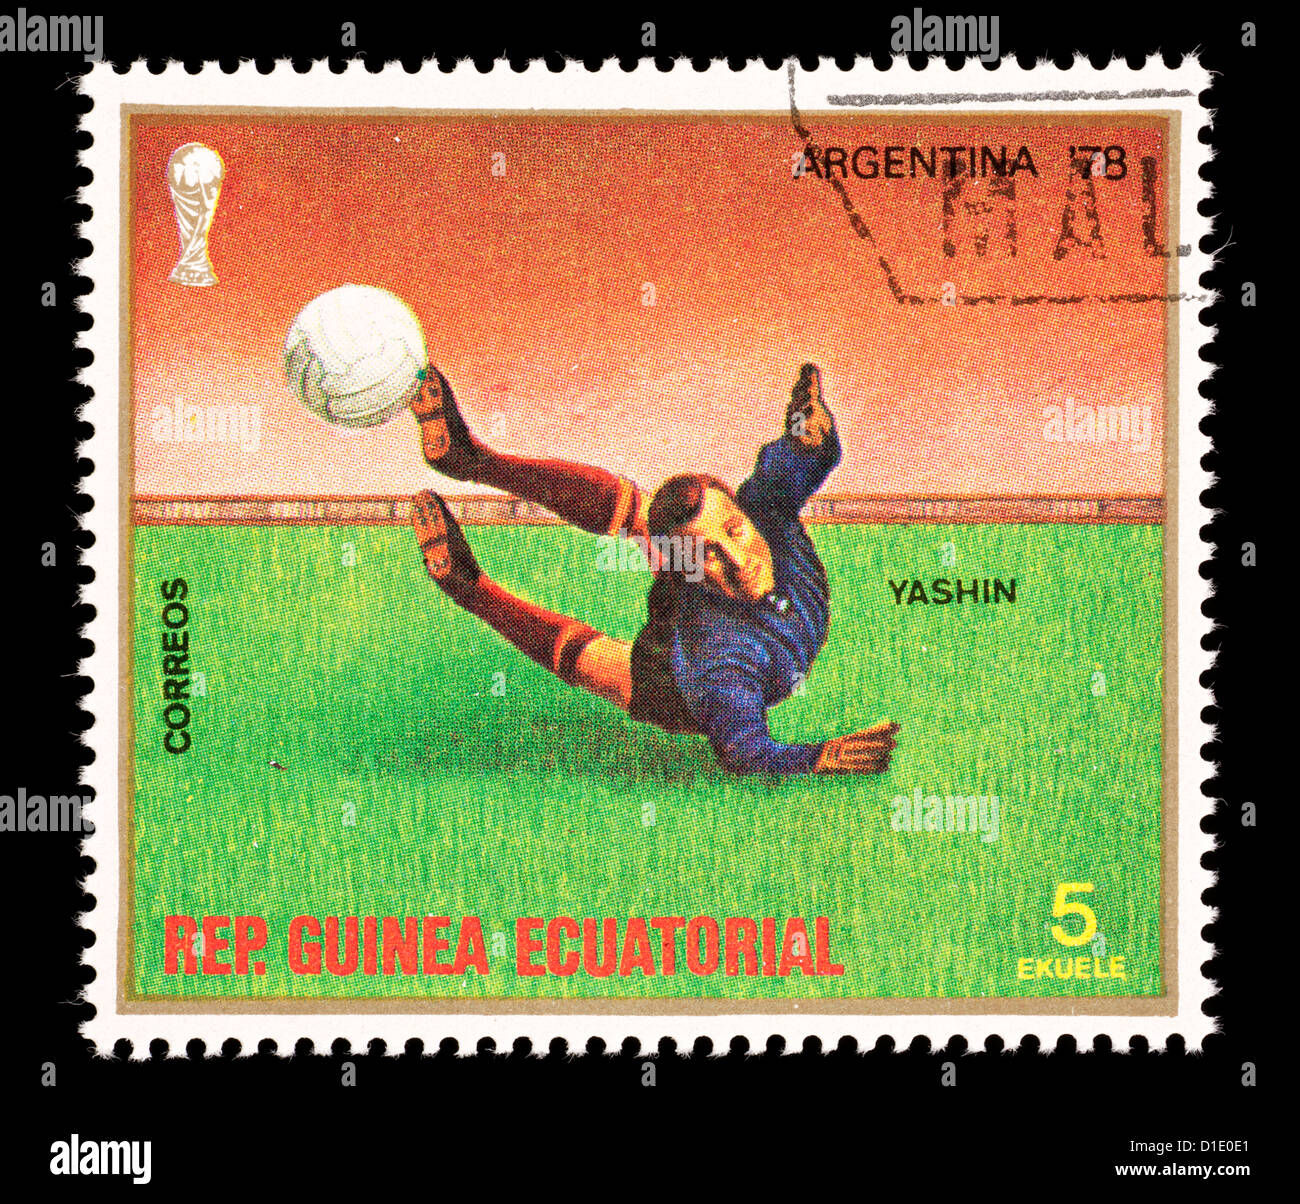 Timbre-poste de Guinée Equatoriale représentant un gardien de football, émis pour la Coupe du Monde de Football 1978 en Argentine. Banque D'Images